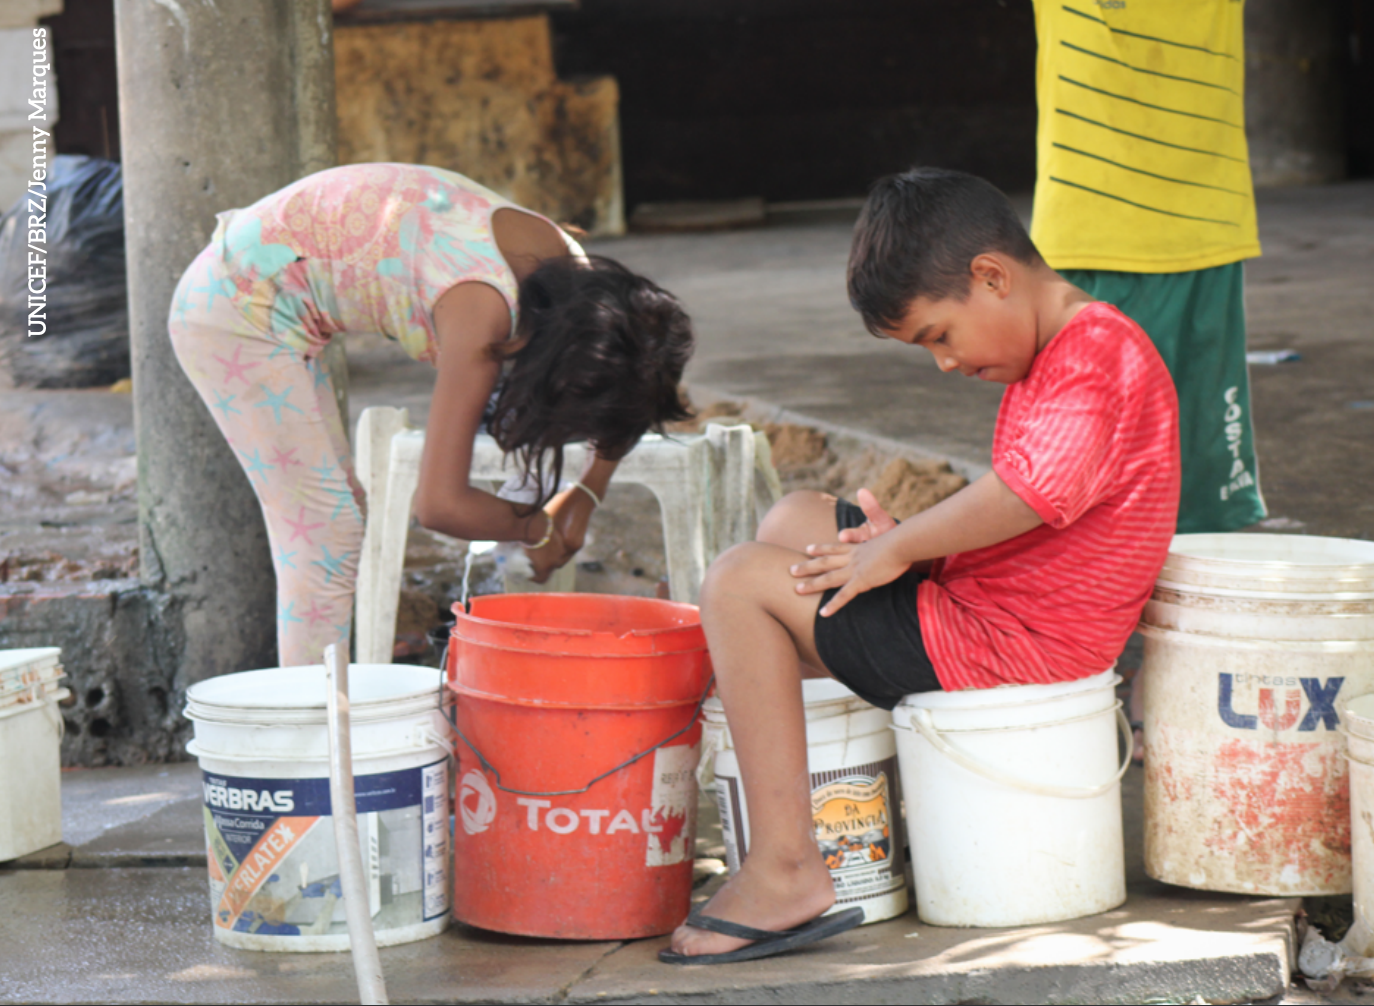 Crianças entre 1 e 4 anos de idade correspondem a maior parte das internações por doenças relacionadas a saneamento inadequado (Jenny Marques/Unicef)